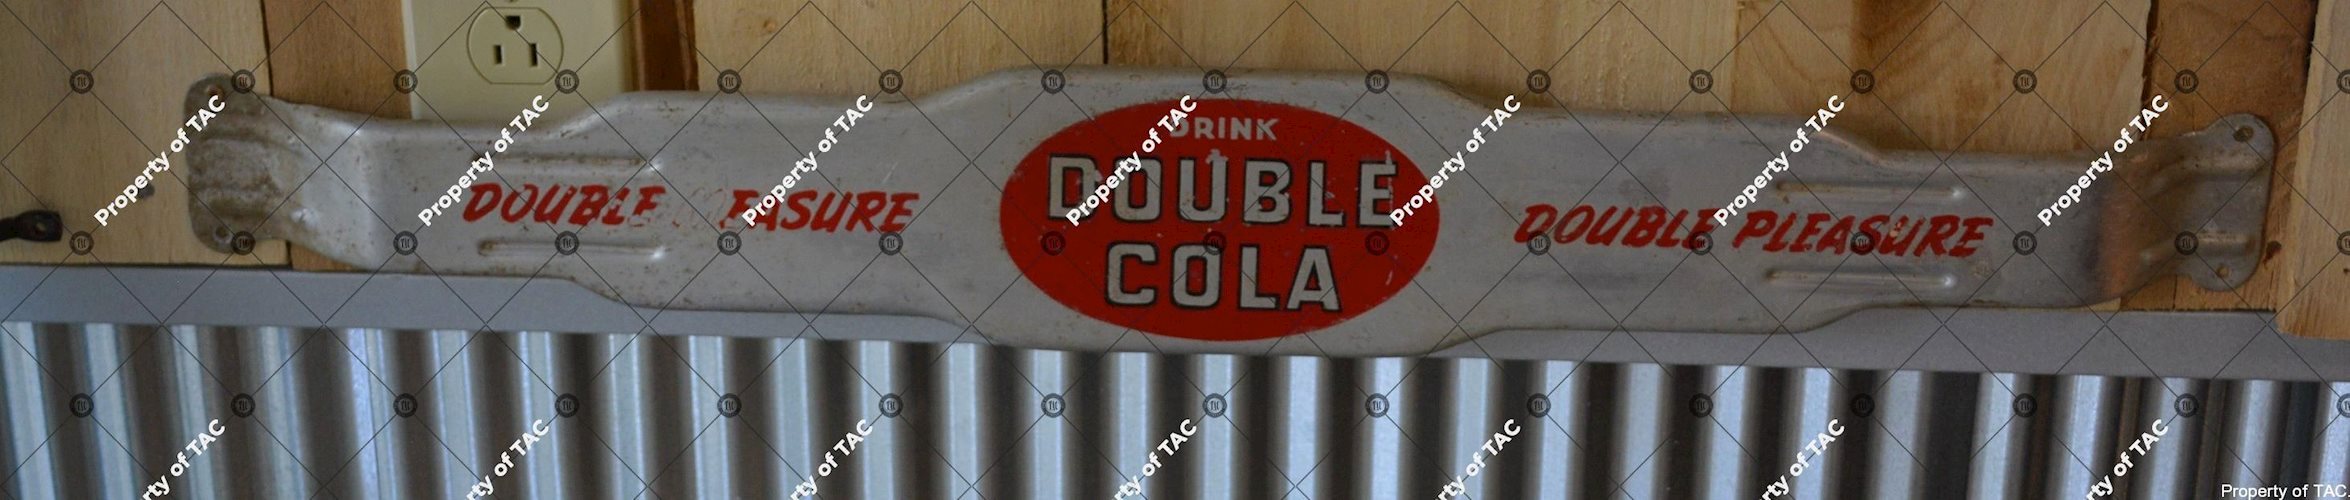 Double Cola Double Pleasure" door push"